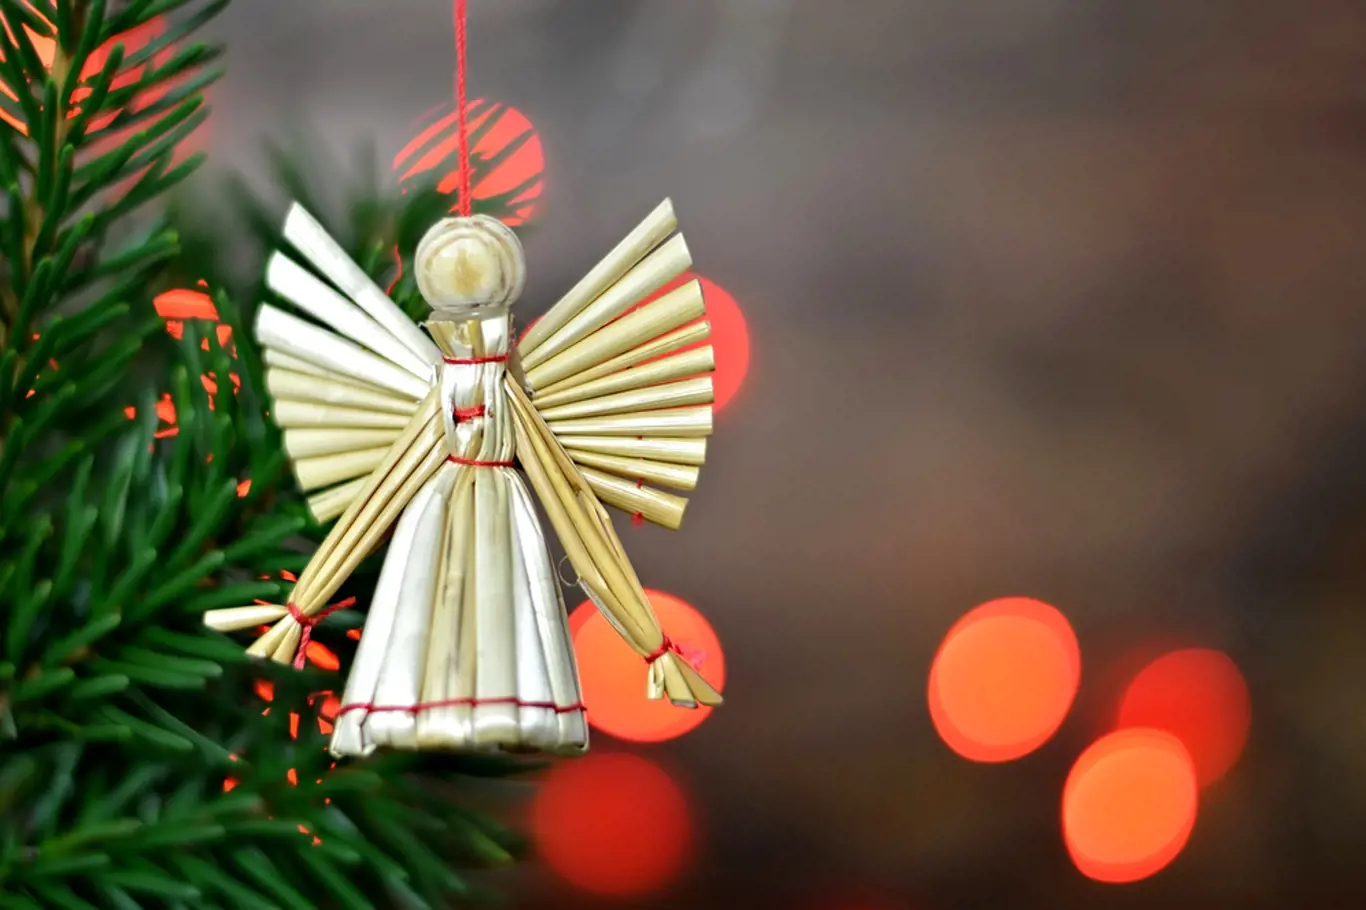 Ozdoba na vánoční stromek - anděl ze stébel slámy.